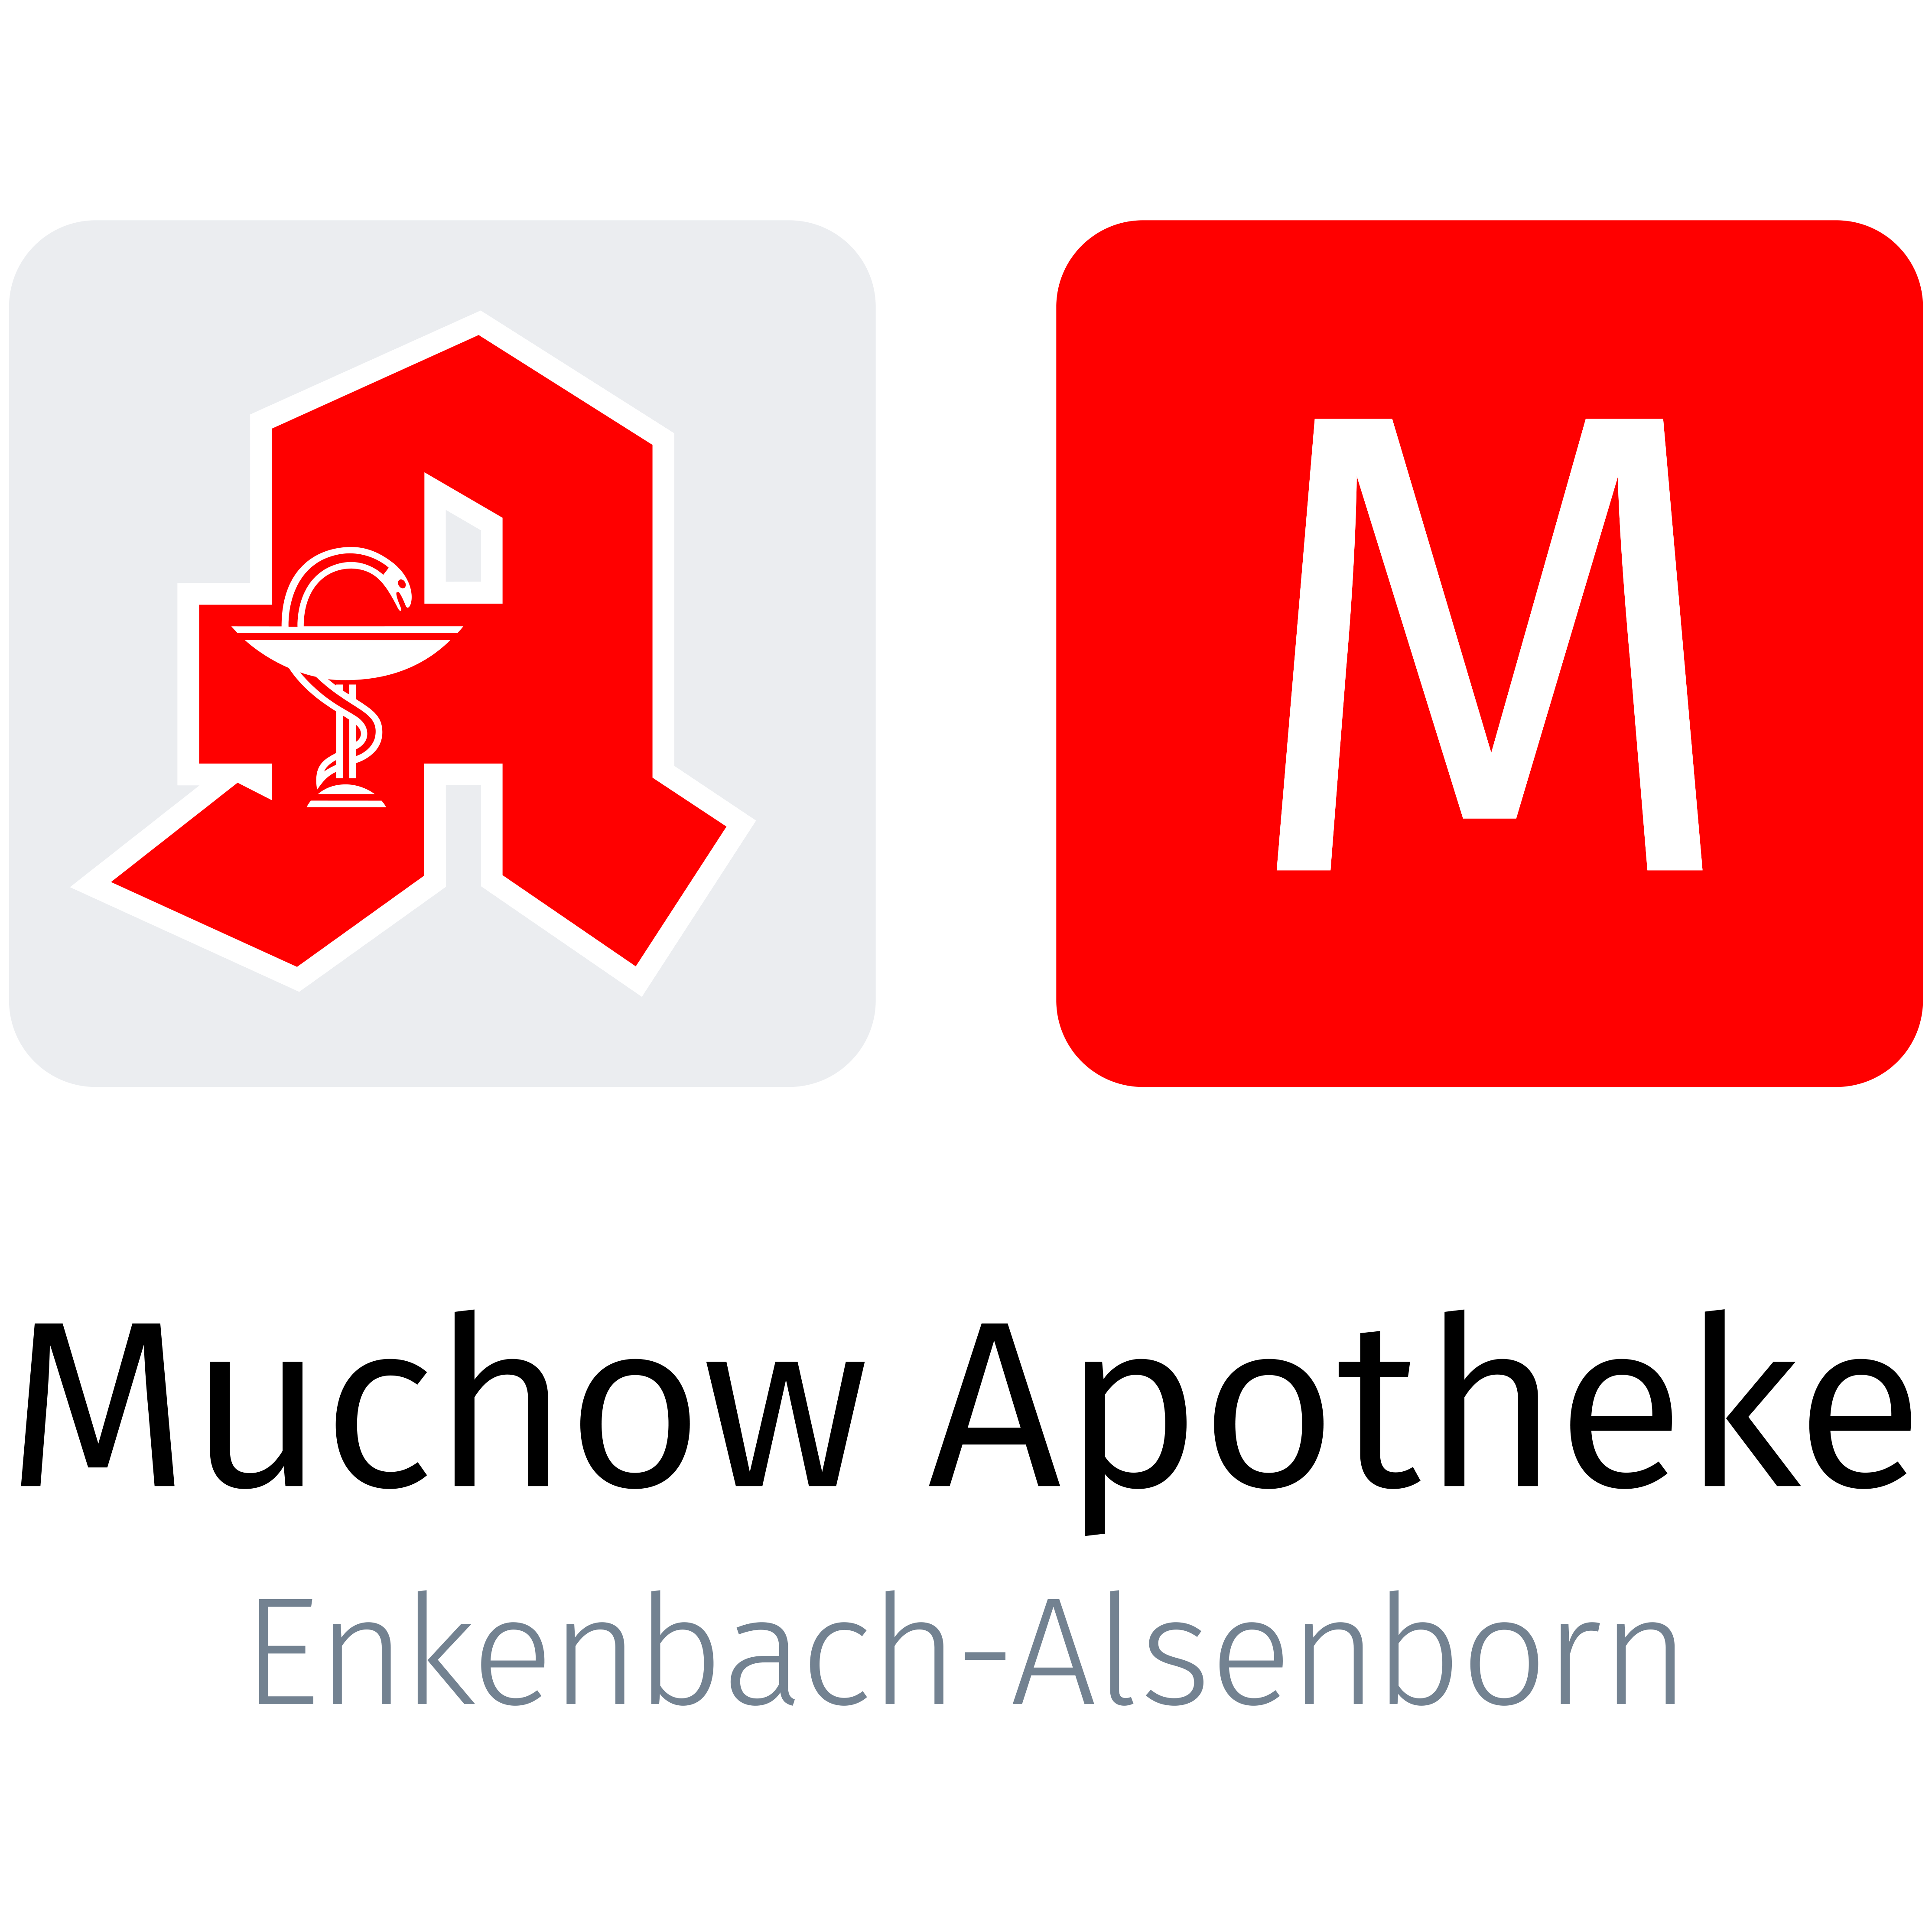 Muchow Apotheke Enkenbach-Alsenborn Logo